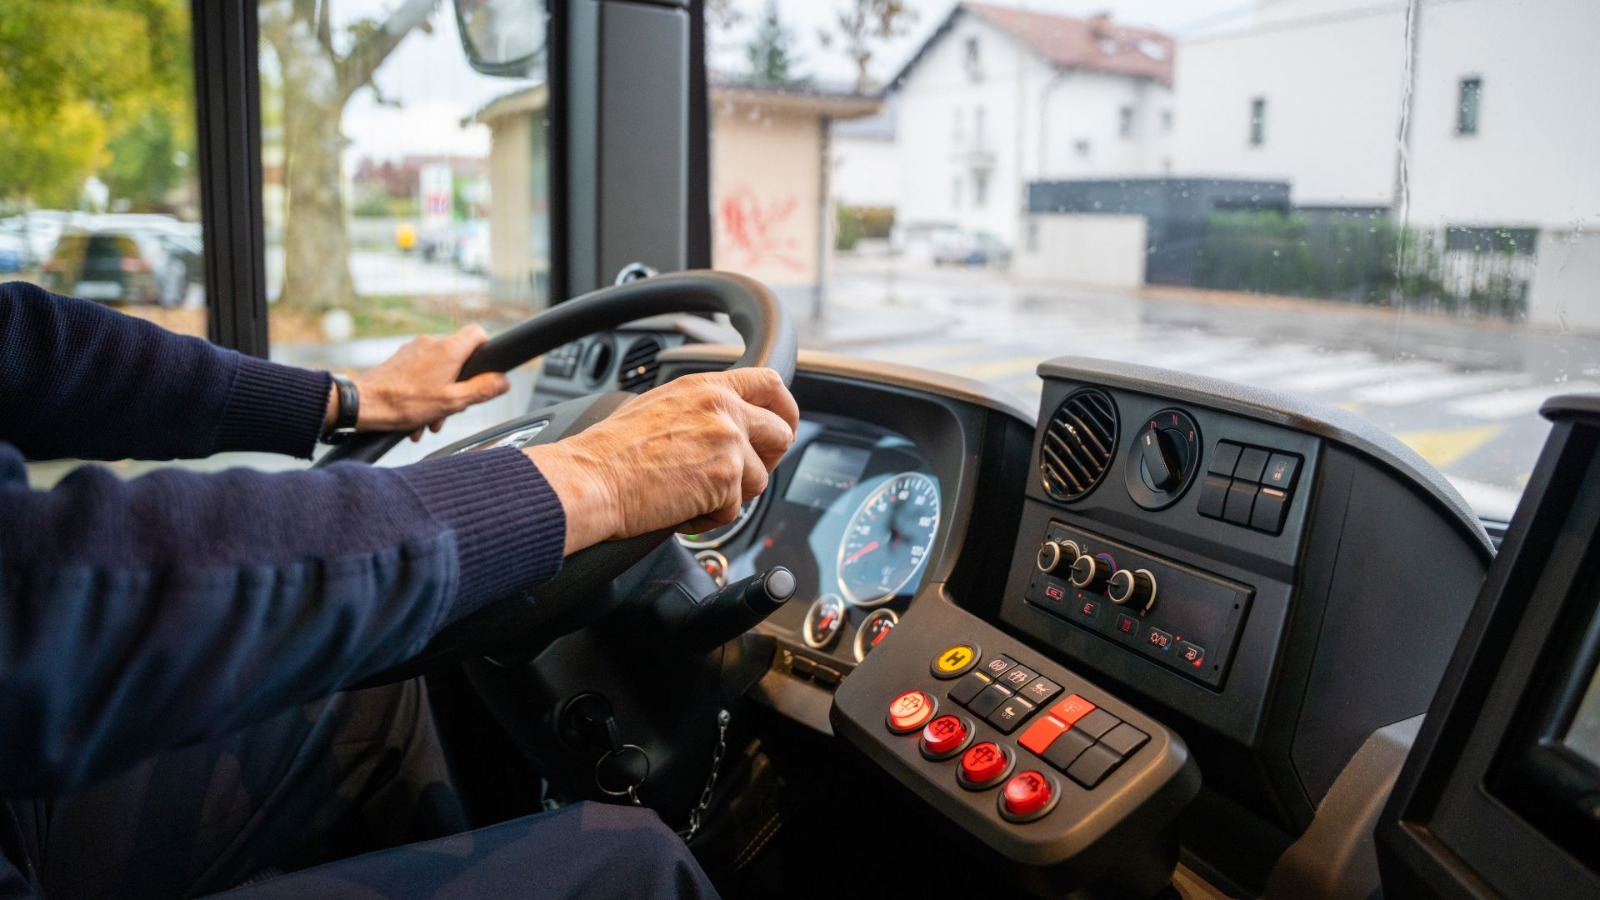 Empresa de ônibus é condenada a pagar indenização por danos morais e materiais à família de motorista falecido por Covid 19